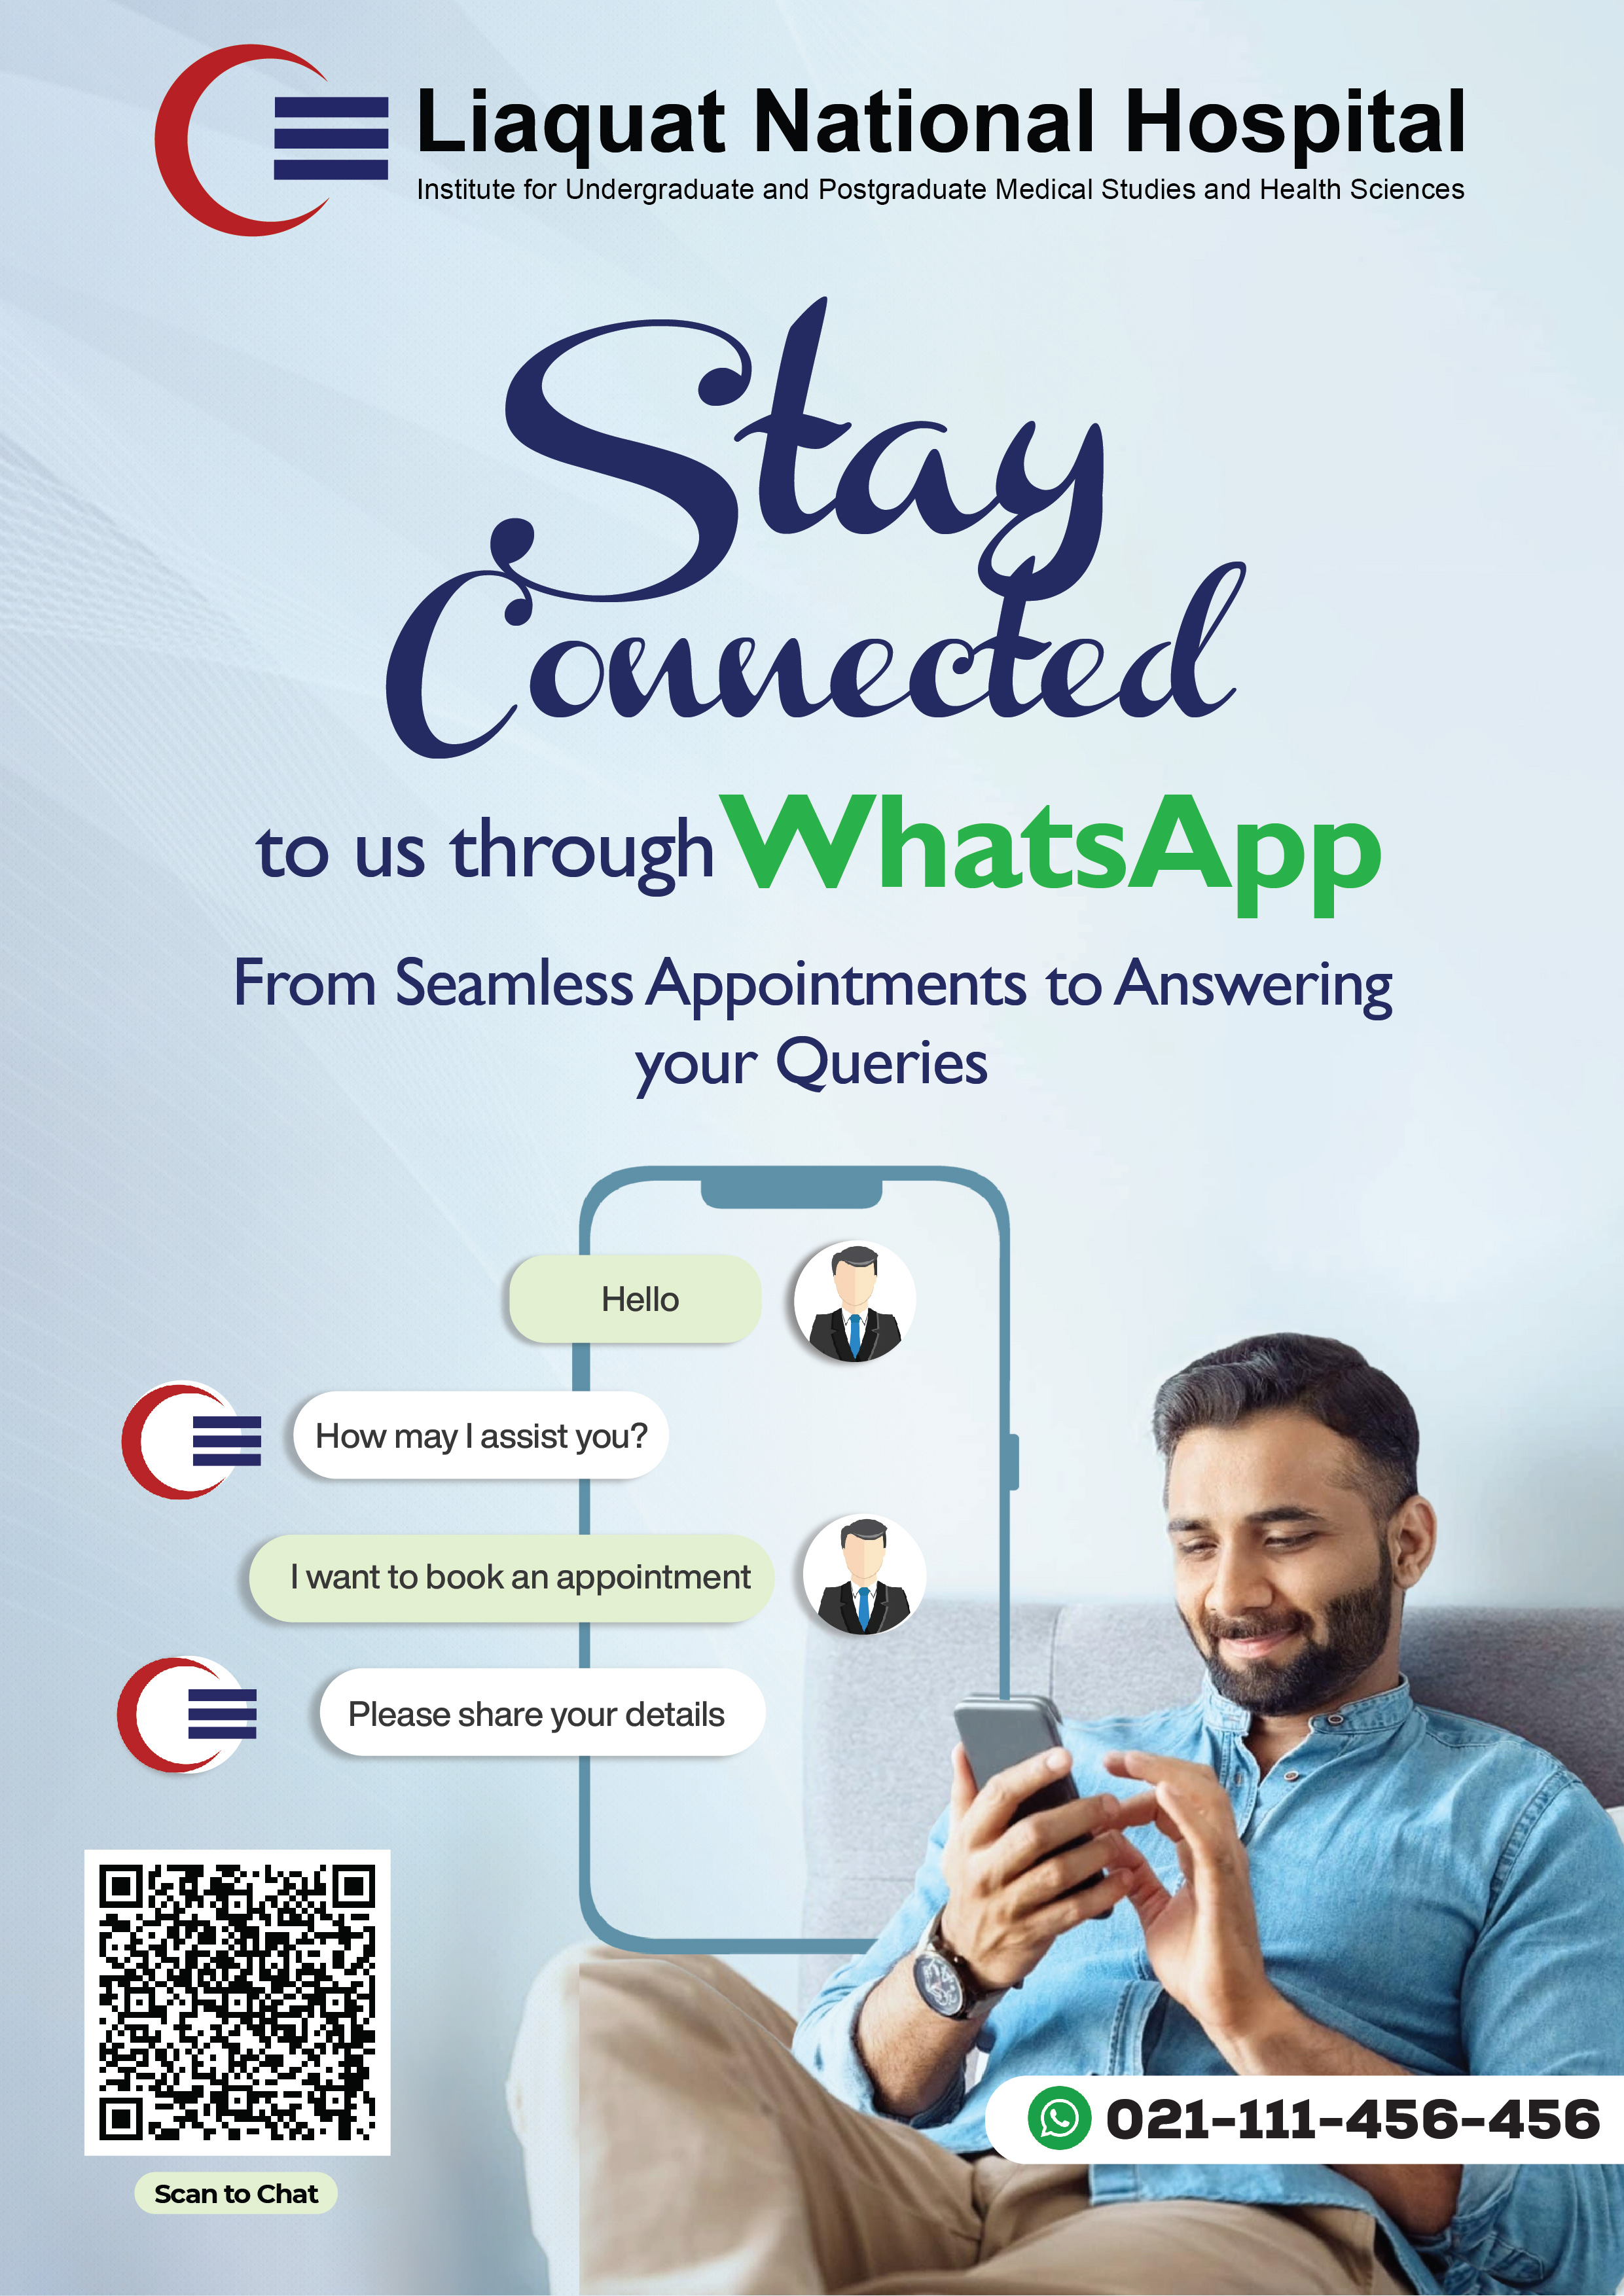 LNH launches WhatsApp Service